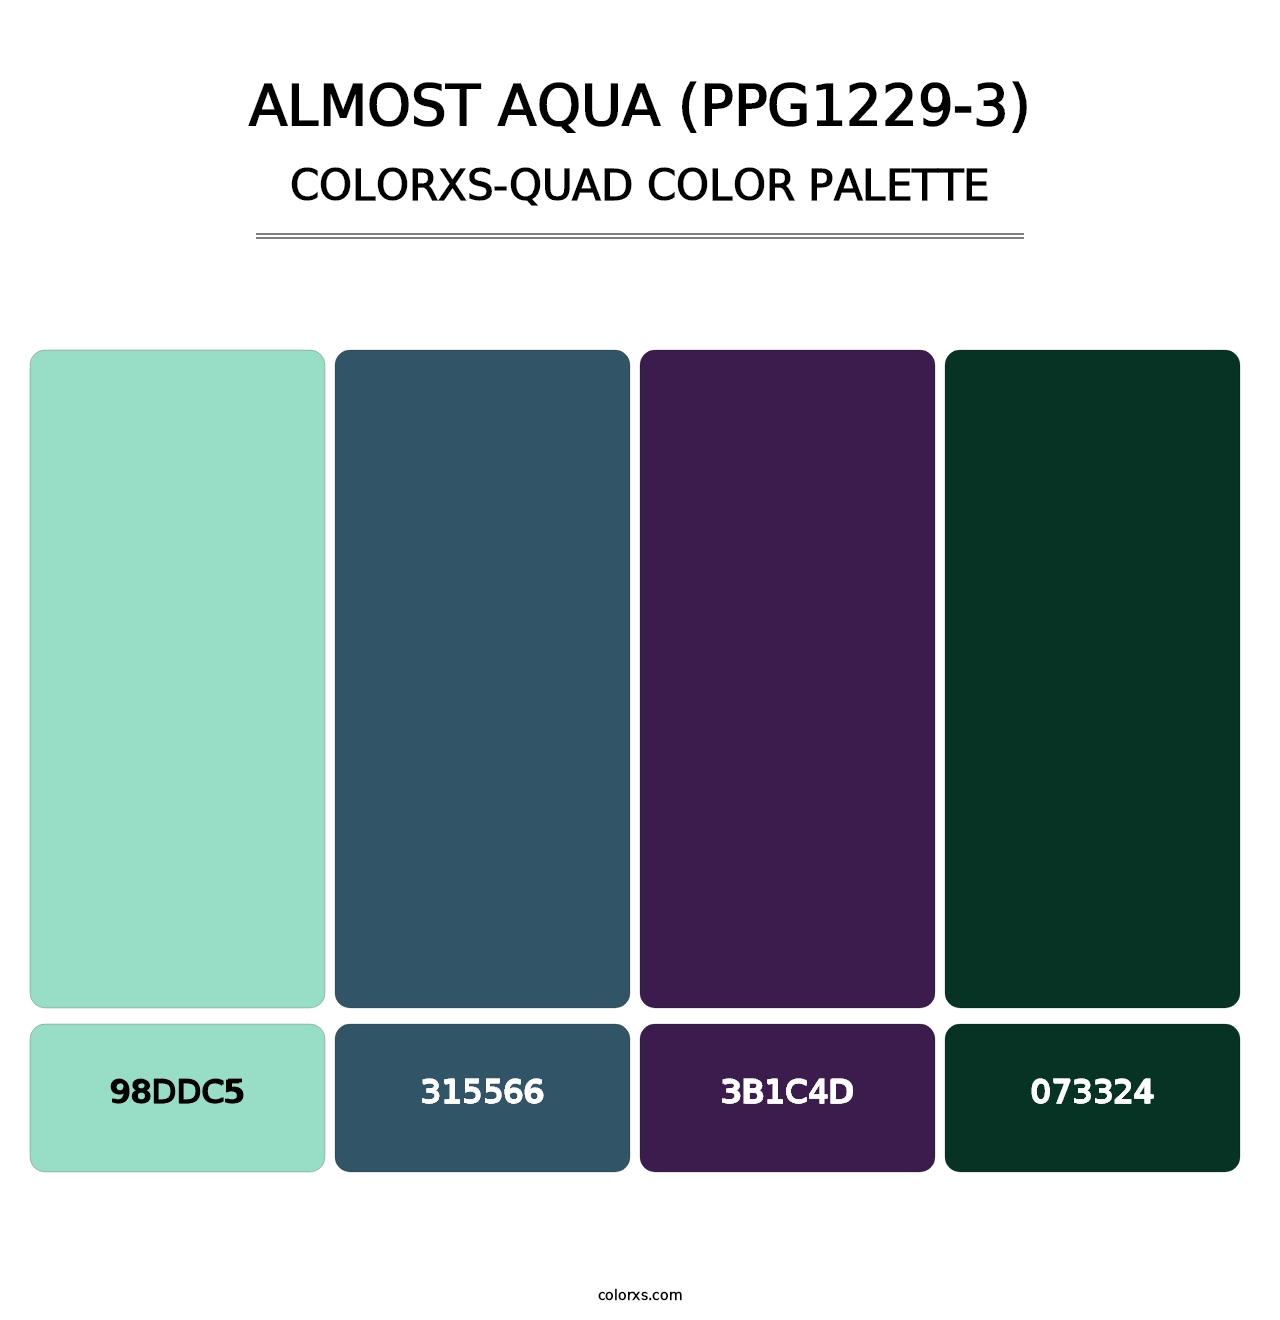 Almost Aqua (PPG1229-3) - Colorxs Quad Palette